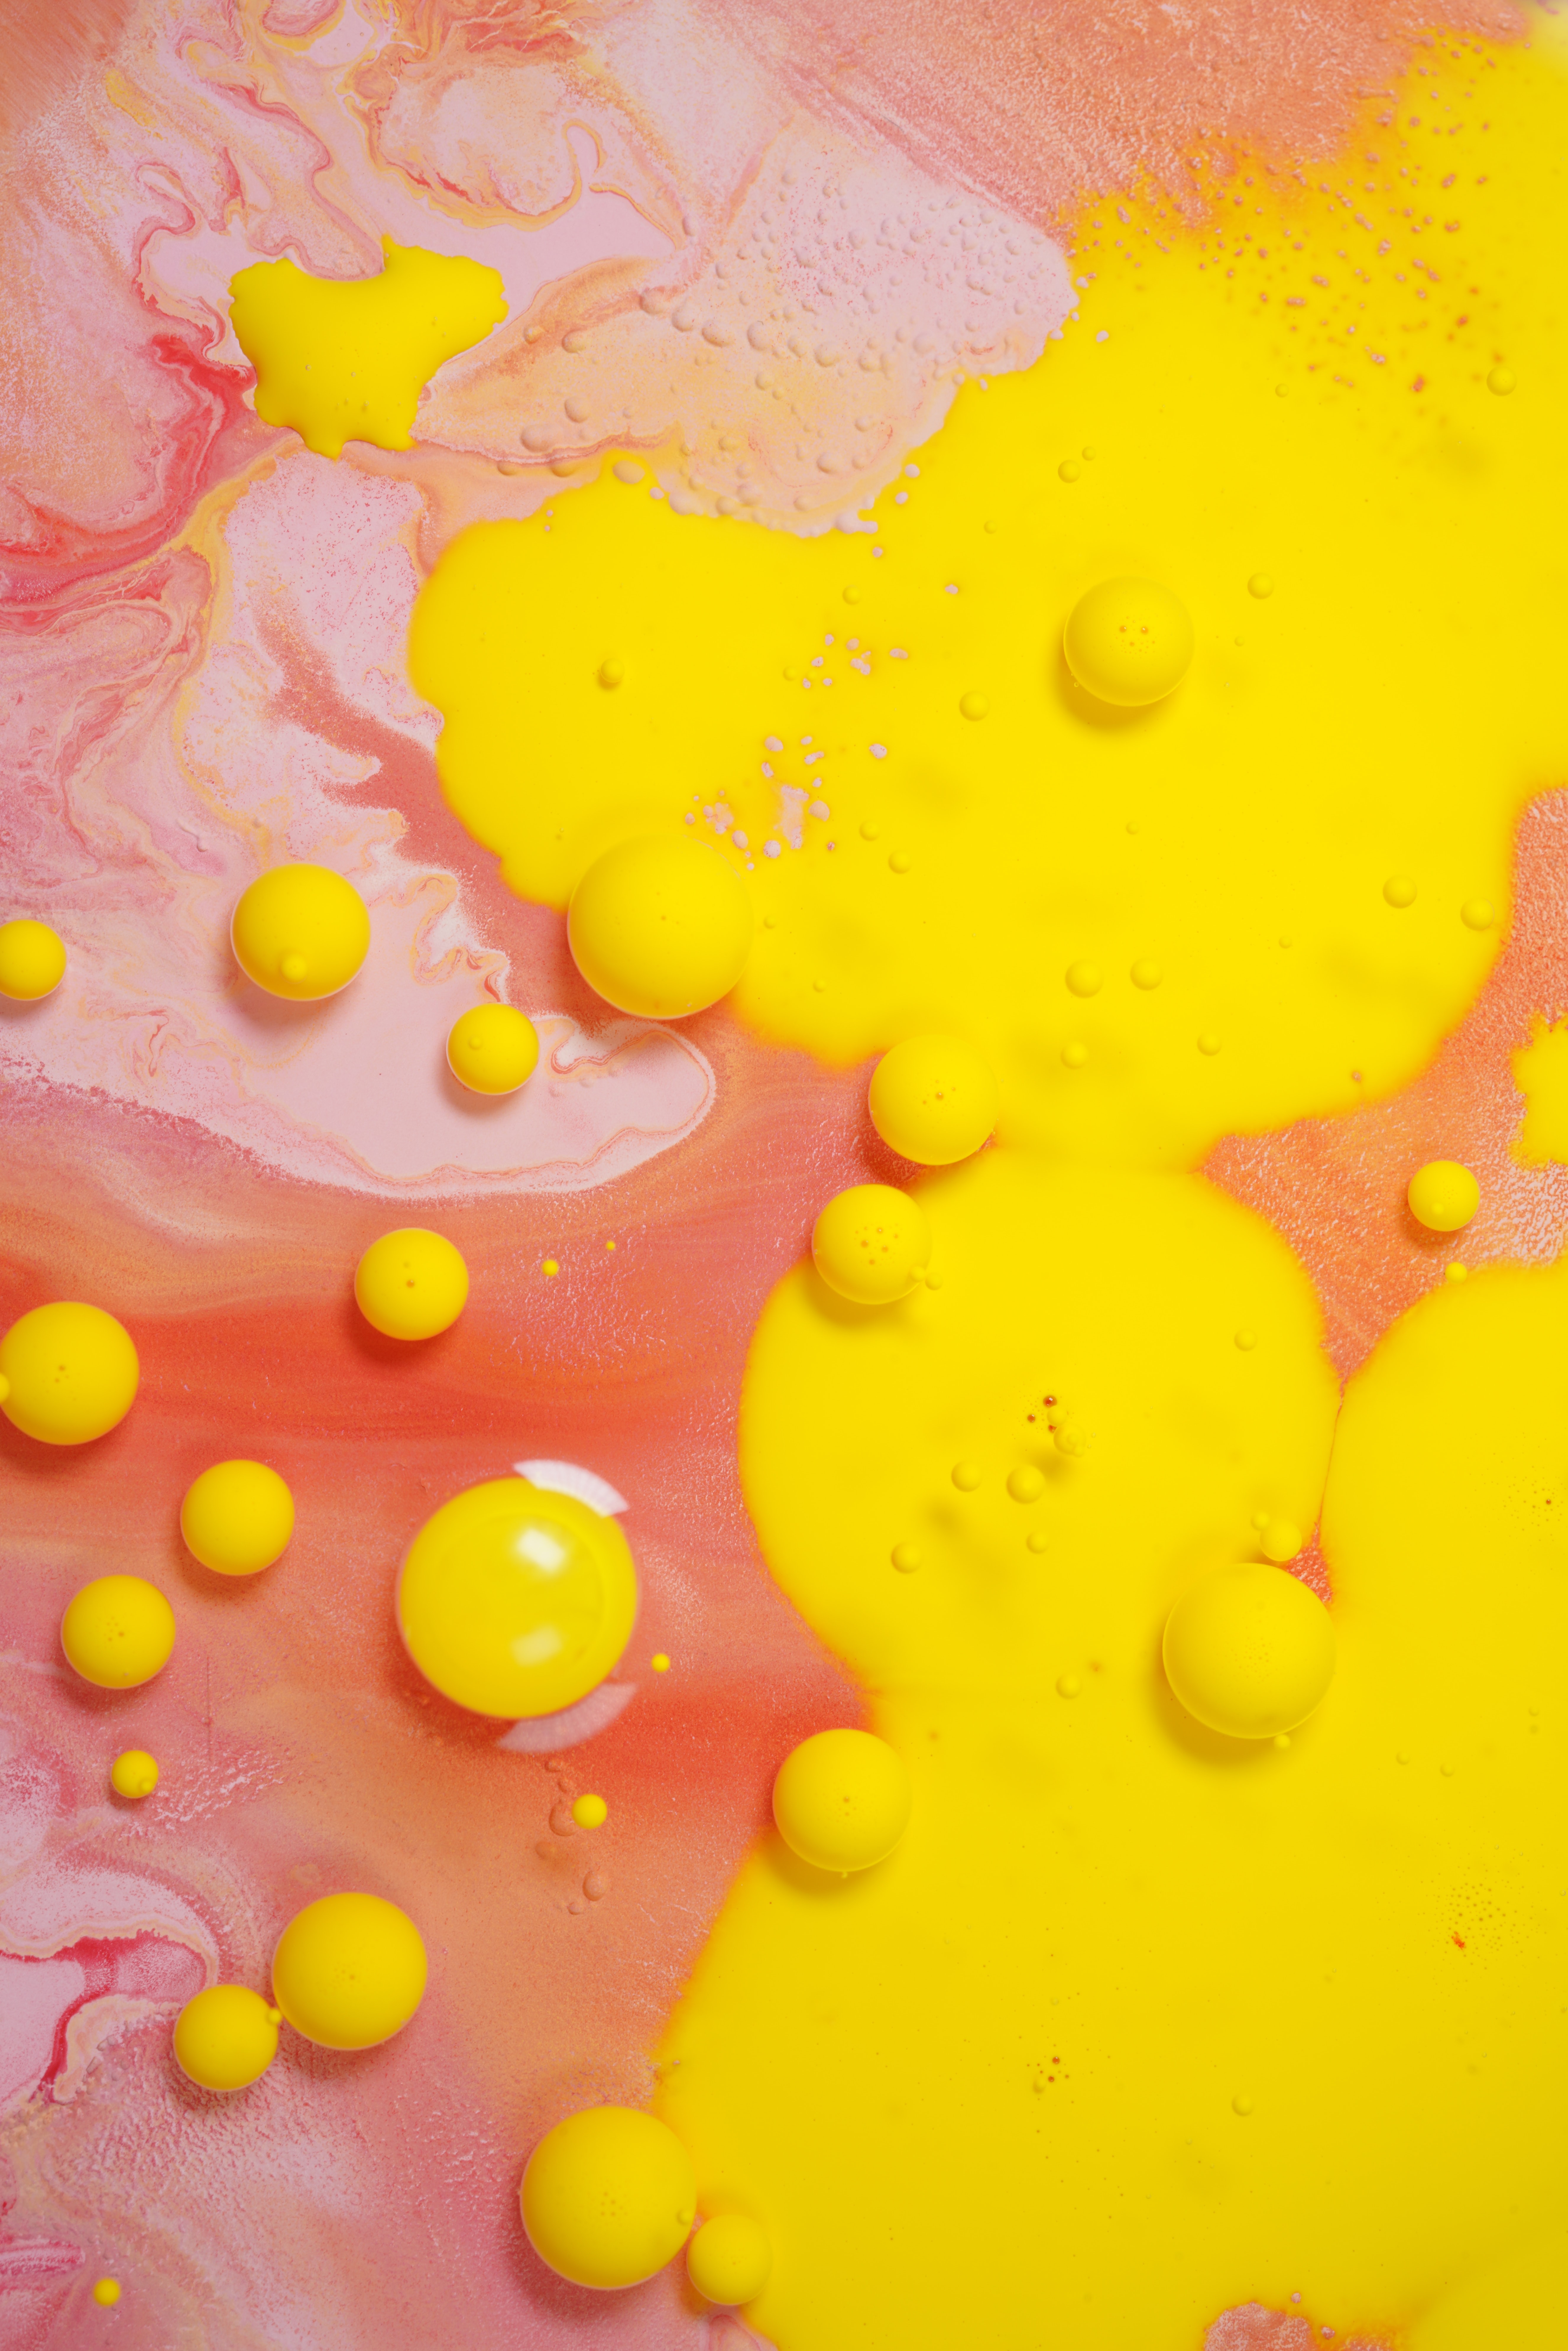 Скачать обои бесплатно Краска, Желтый, Жидкость, Разводы, Пузыри, Абстракция картинка на рабочий стол ПК